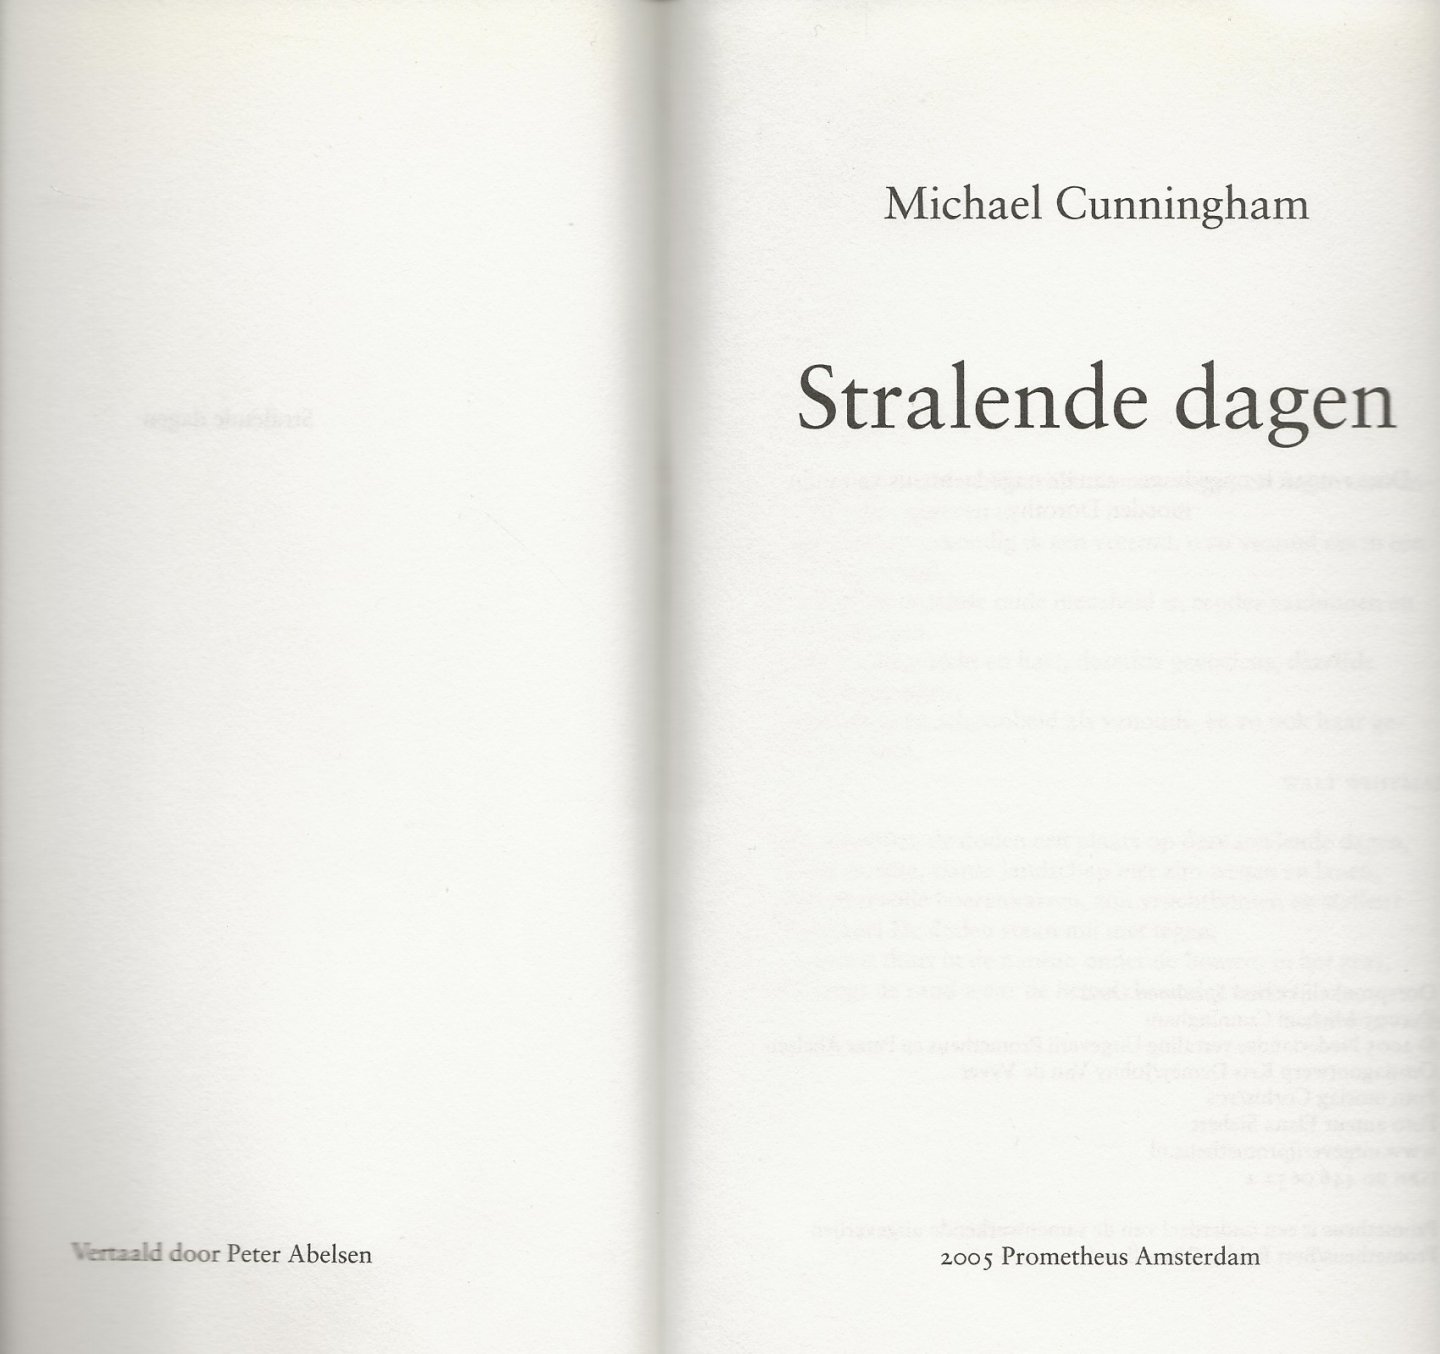 Cunningham, Michael . Vertaald door Peter Alelsen  Foto Omslag Corbis - tbs  Foto auteur Elena  Siebert - Stralende Dagen